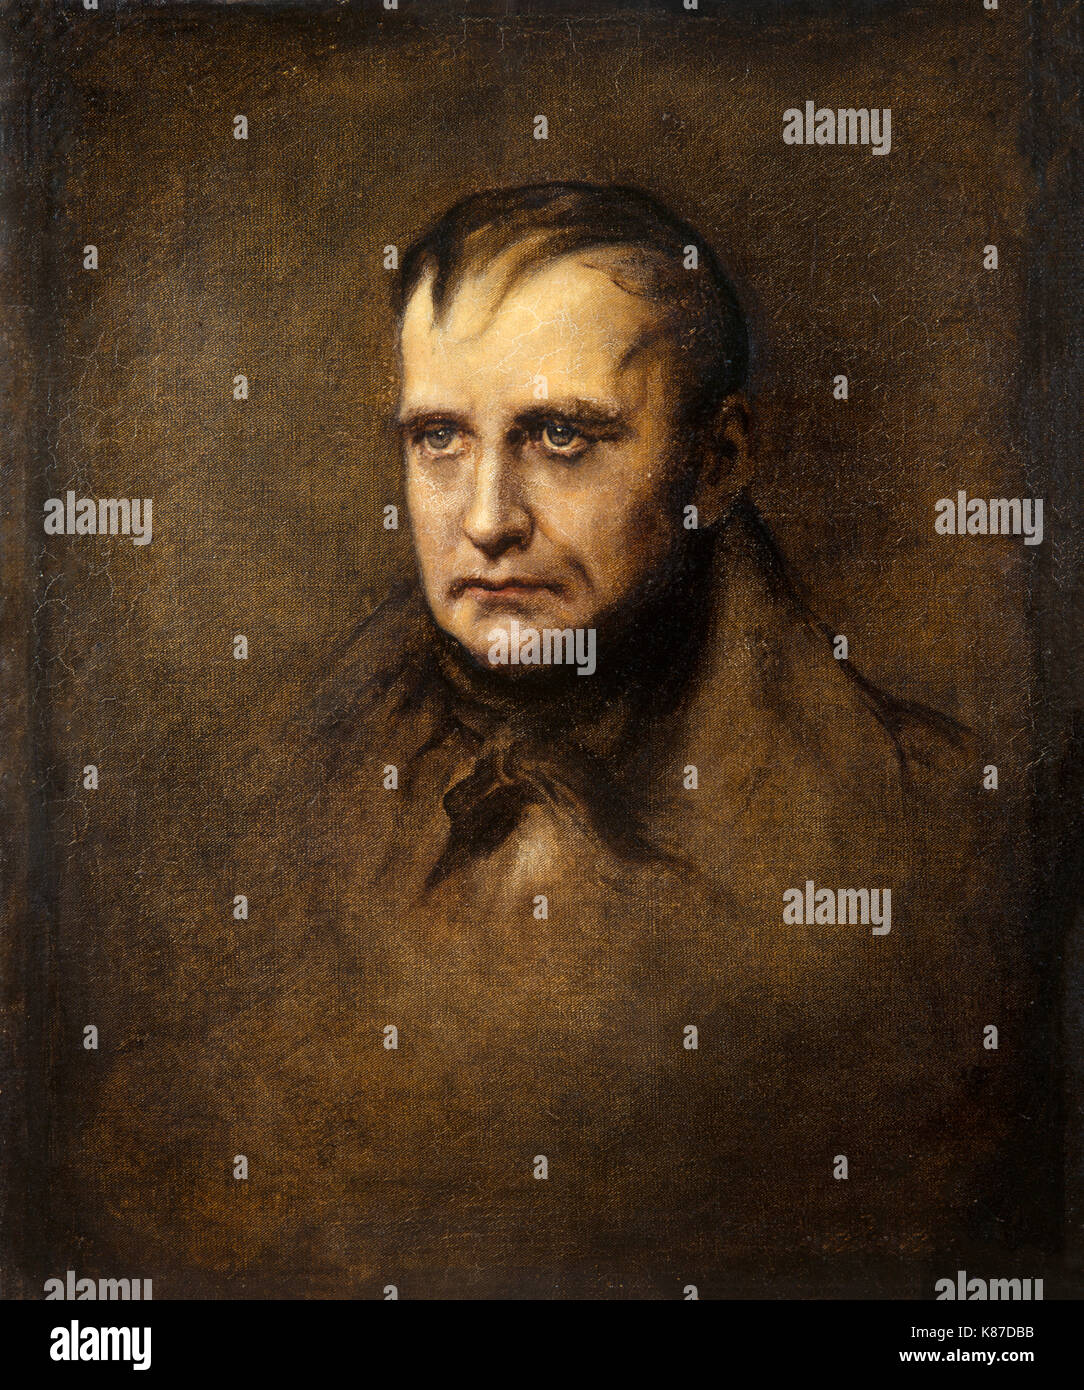 El Athenaeum - Santa Elena, la última fase (James Sant) Retrato de Napoleón - dernier retrato de Napoleón Bonaparte Foto de stock